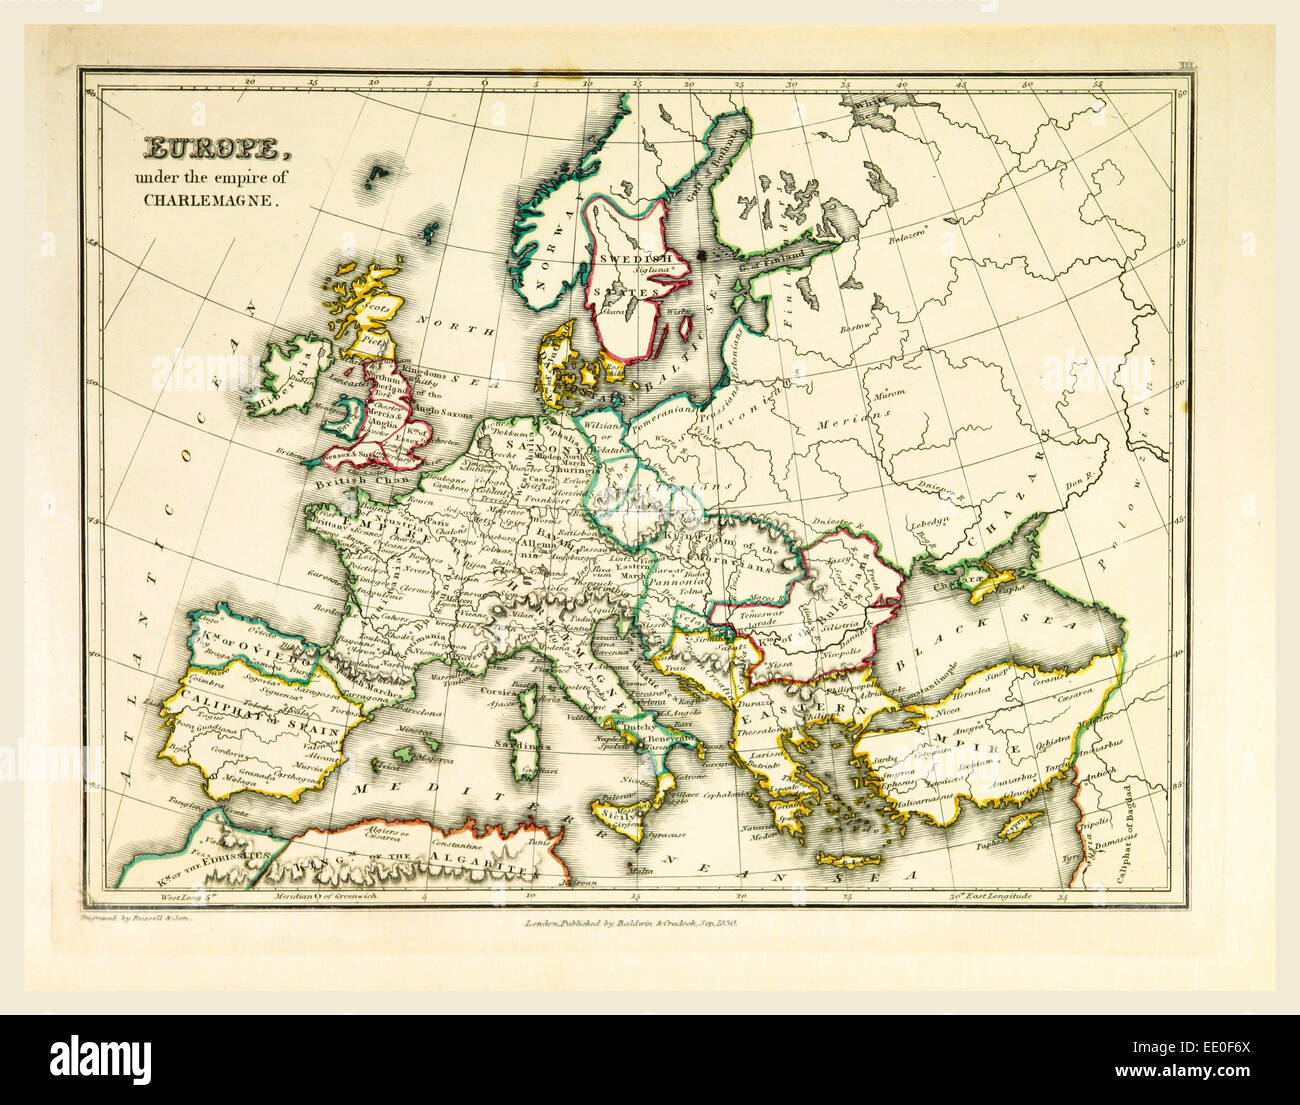 Карта европы 15 век. Europe Map 19th Century. Карта Европы 15 века. Карта Европы 19 века. Карта Европы 15-16 веков.